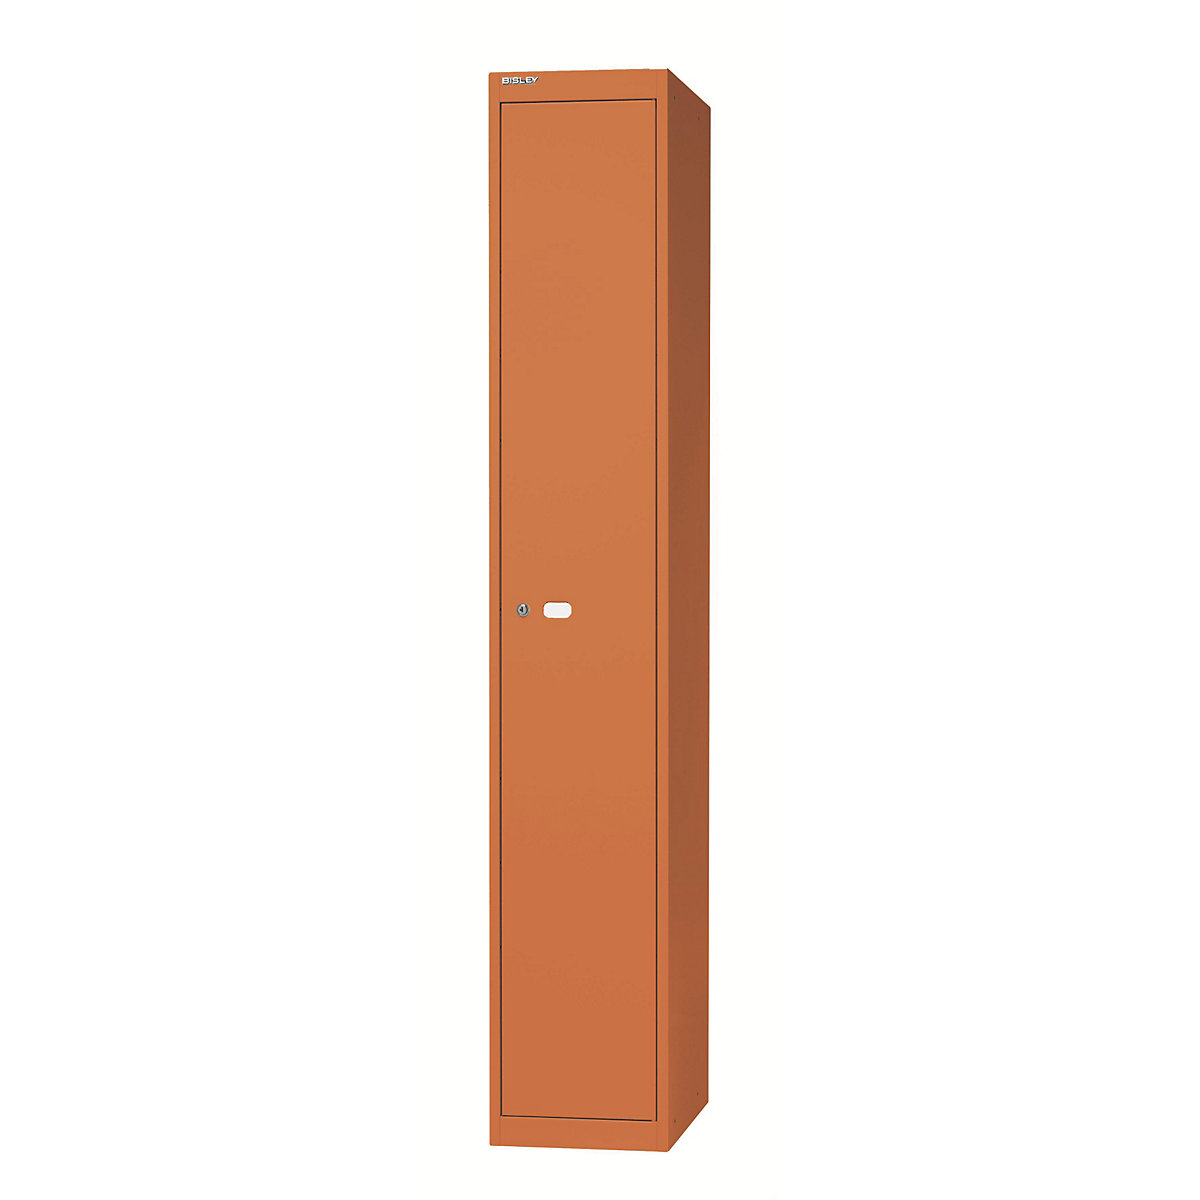 BISLEY OFFICE Garderobensystem, 1 Abteil, Tiefe 457 mm, mit 1 Hutfachboden, 1 Kleiderstange, orange